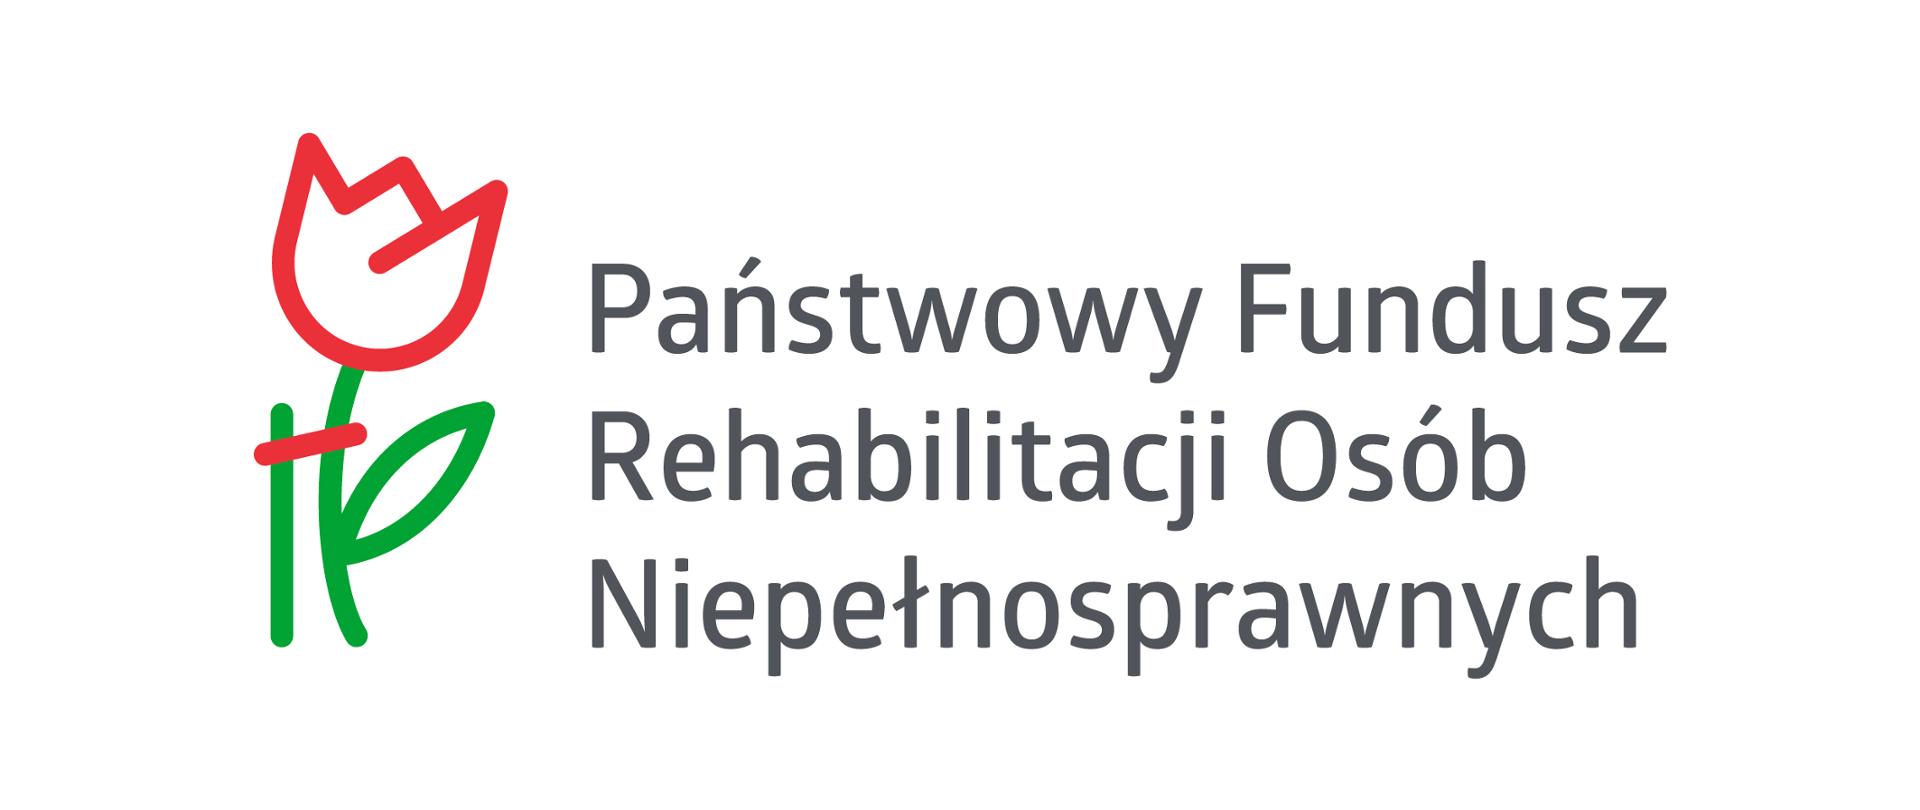 Symbol tulipana i napis Państwowy Fundusz Rehabilitacji Osób Niepełnosrawnych